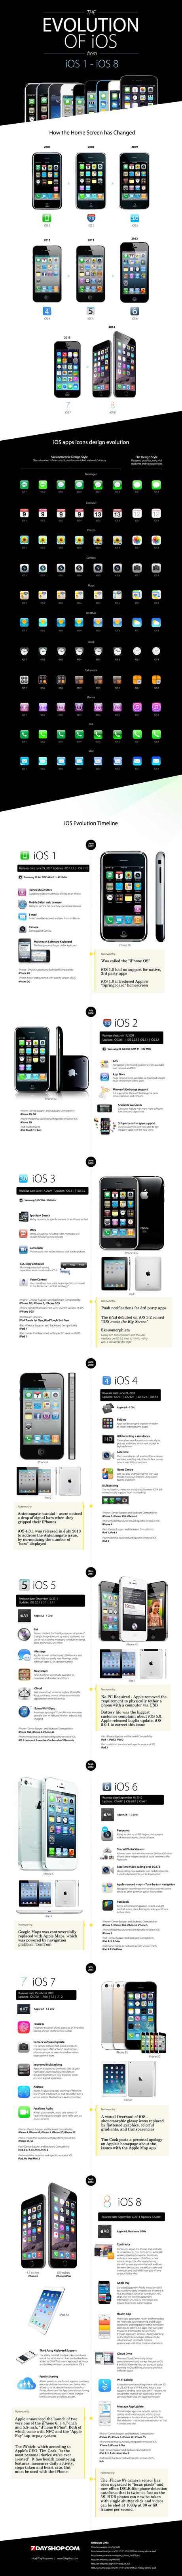 Infographie sur l'évolution de l'iOS 1 à iOS 8 sur iPhone